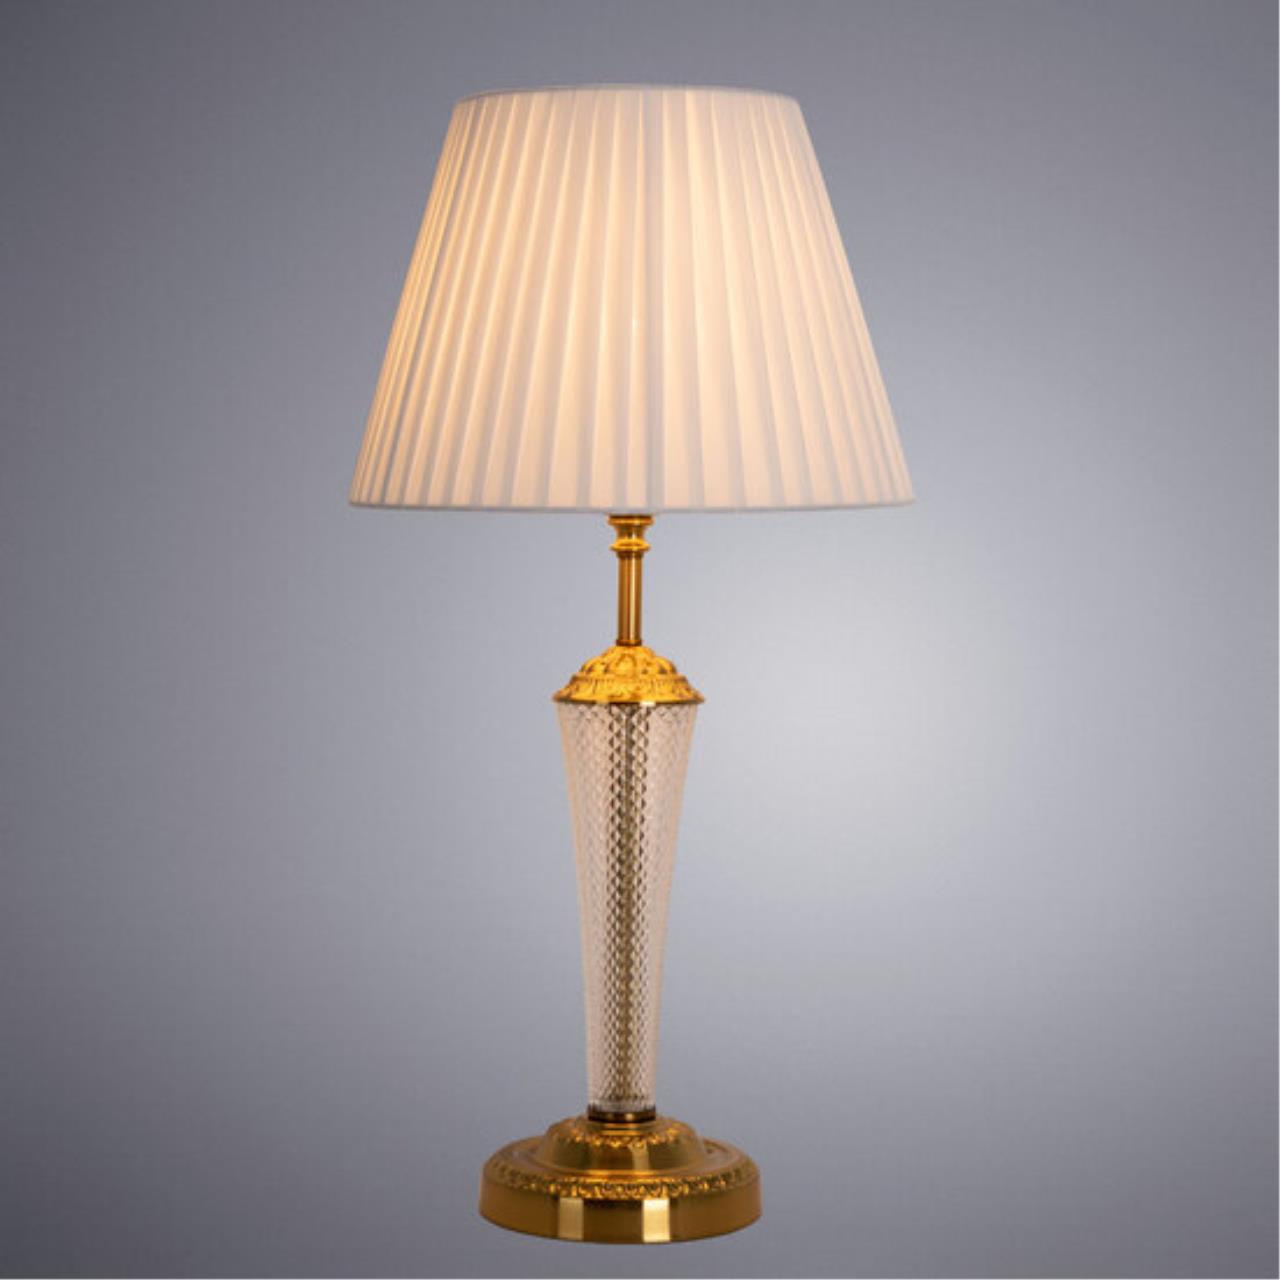 Интерьерная настольная лампа Arte lamp A7301LT-1PB